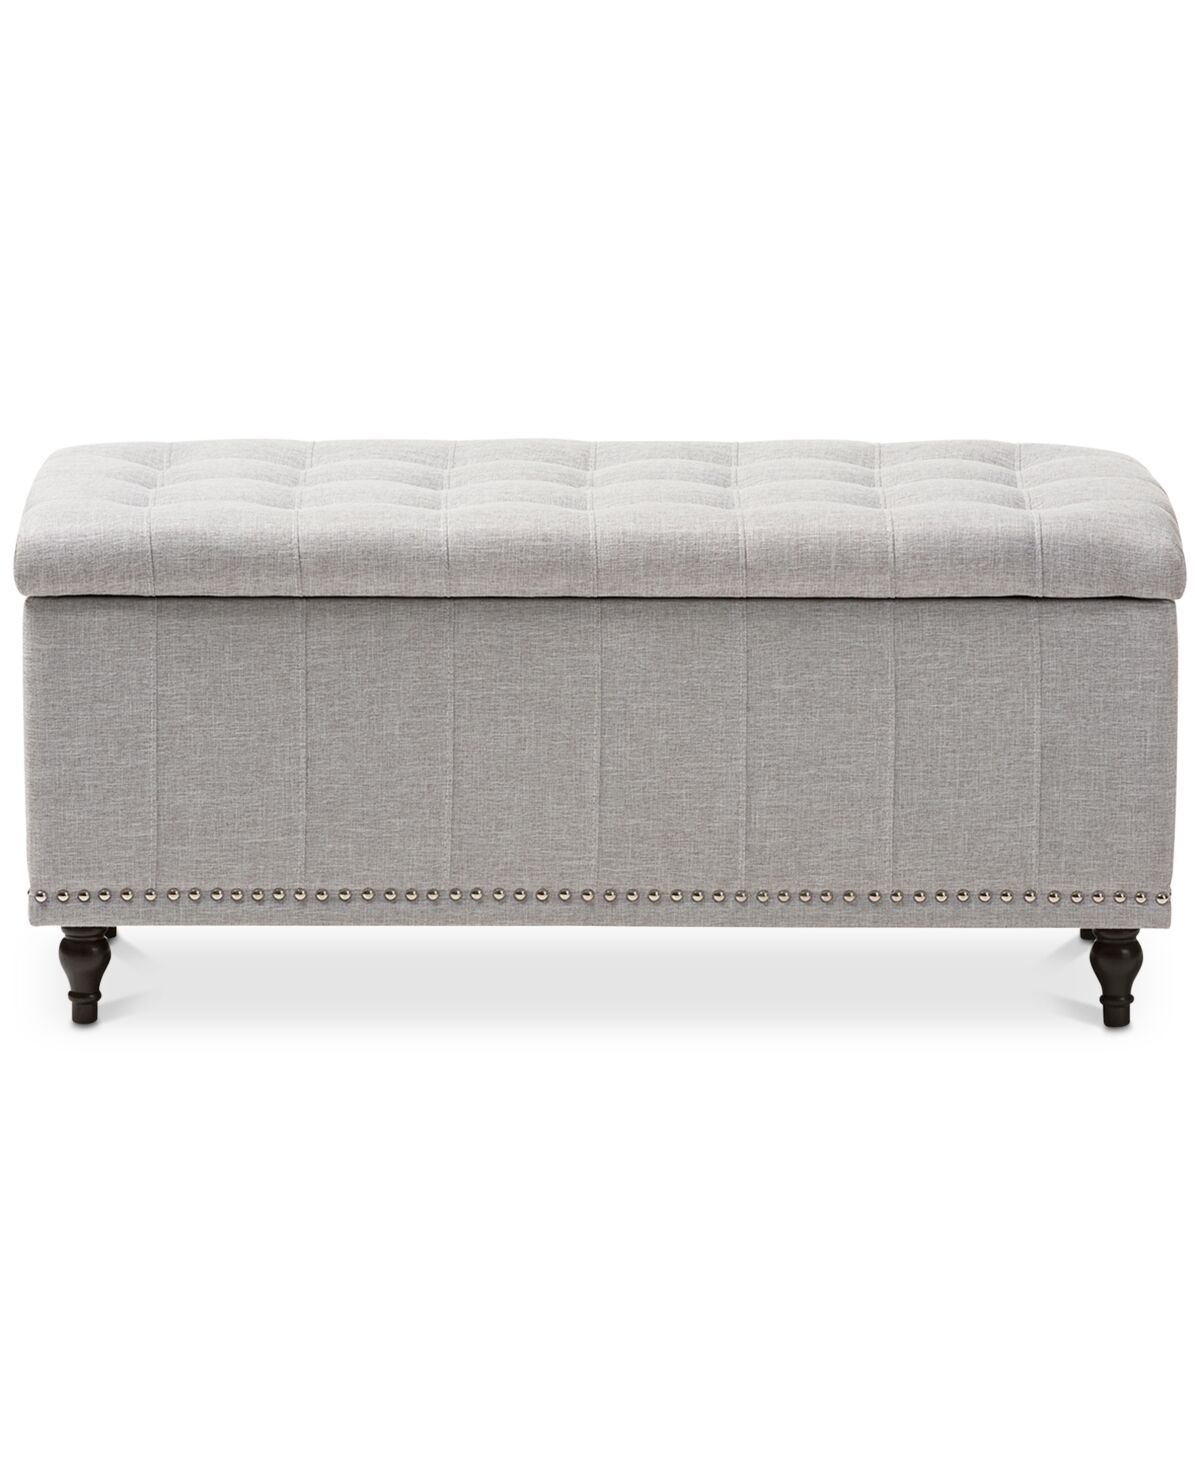 Furniture Kaylee Button-Tufted Storage Ottoman Bench - Greyish Beige